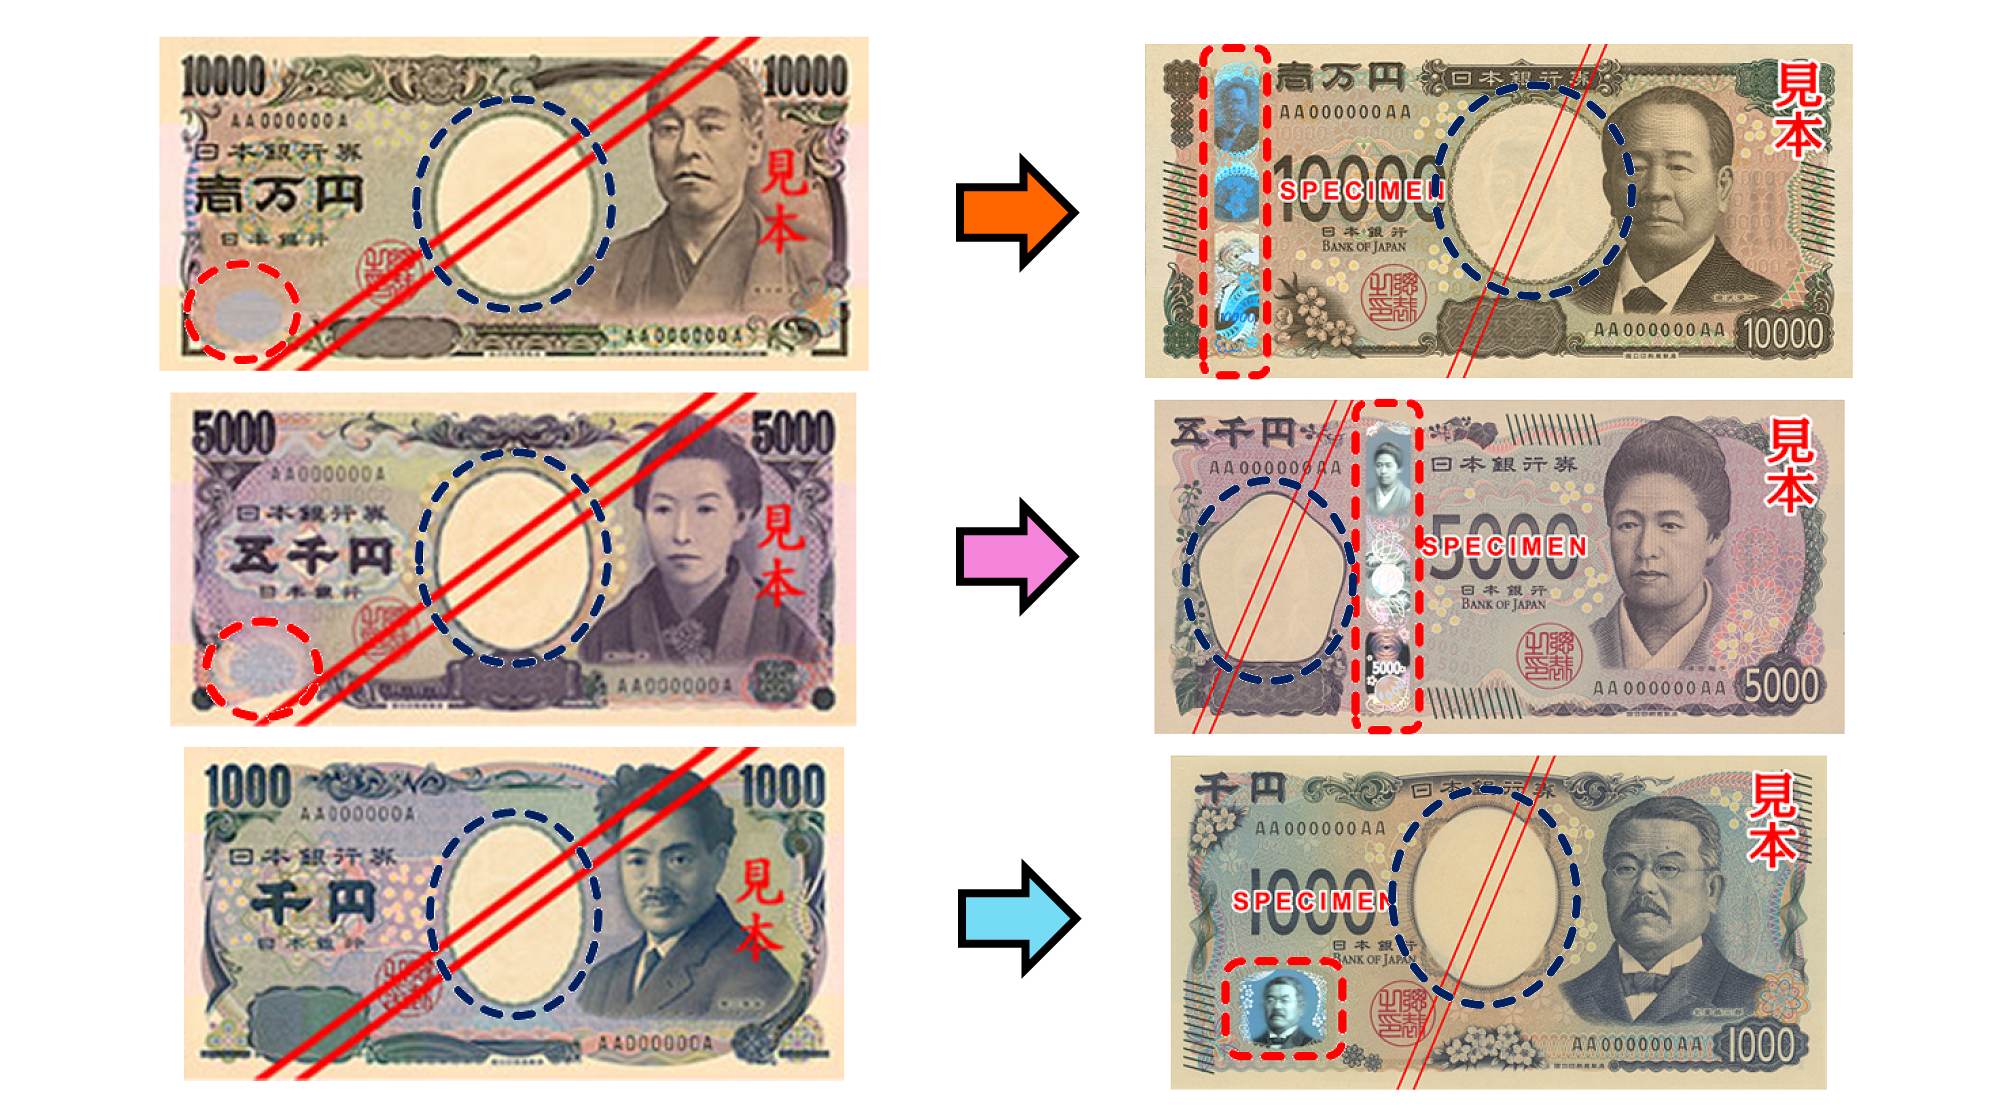 ホログラムとすき入れ配置を比較するために並べられた、現在主に流通している日本銀行券と新しい日本銀行券の画像。各券種の表面にあるホログラムの形と配置は、一万円券がストライプ型で左寄り、五千円券がストライプ型で中央寄り、千円券がパッチ型で左下。すき入れは、隣接する券種（一万円券と五千円券、五千円券と千円券）で形と配置が異なる。